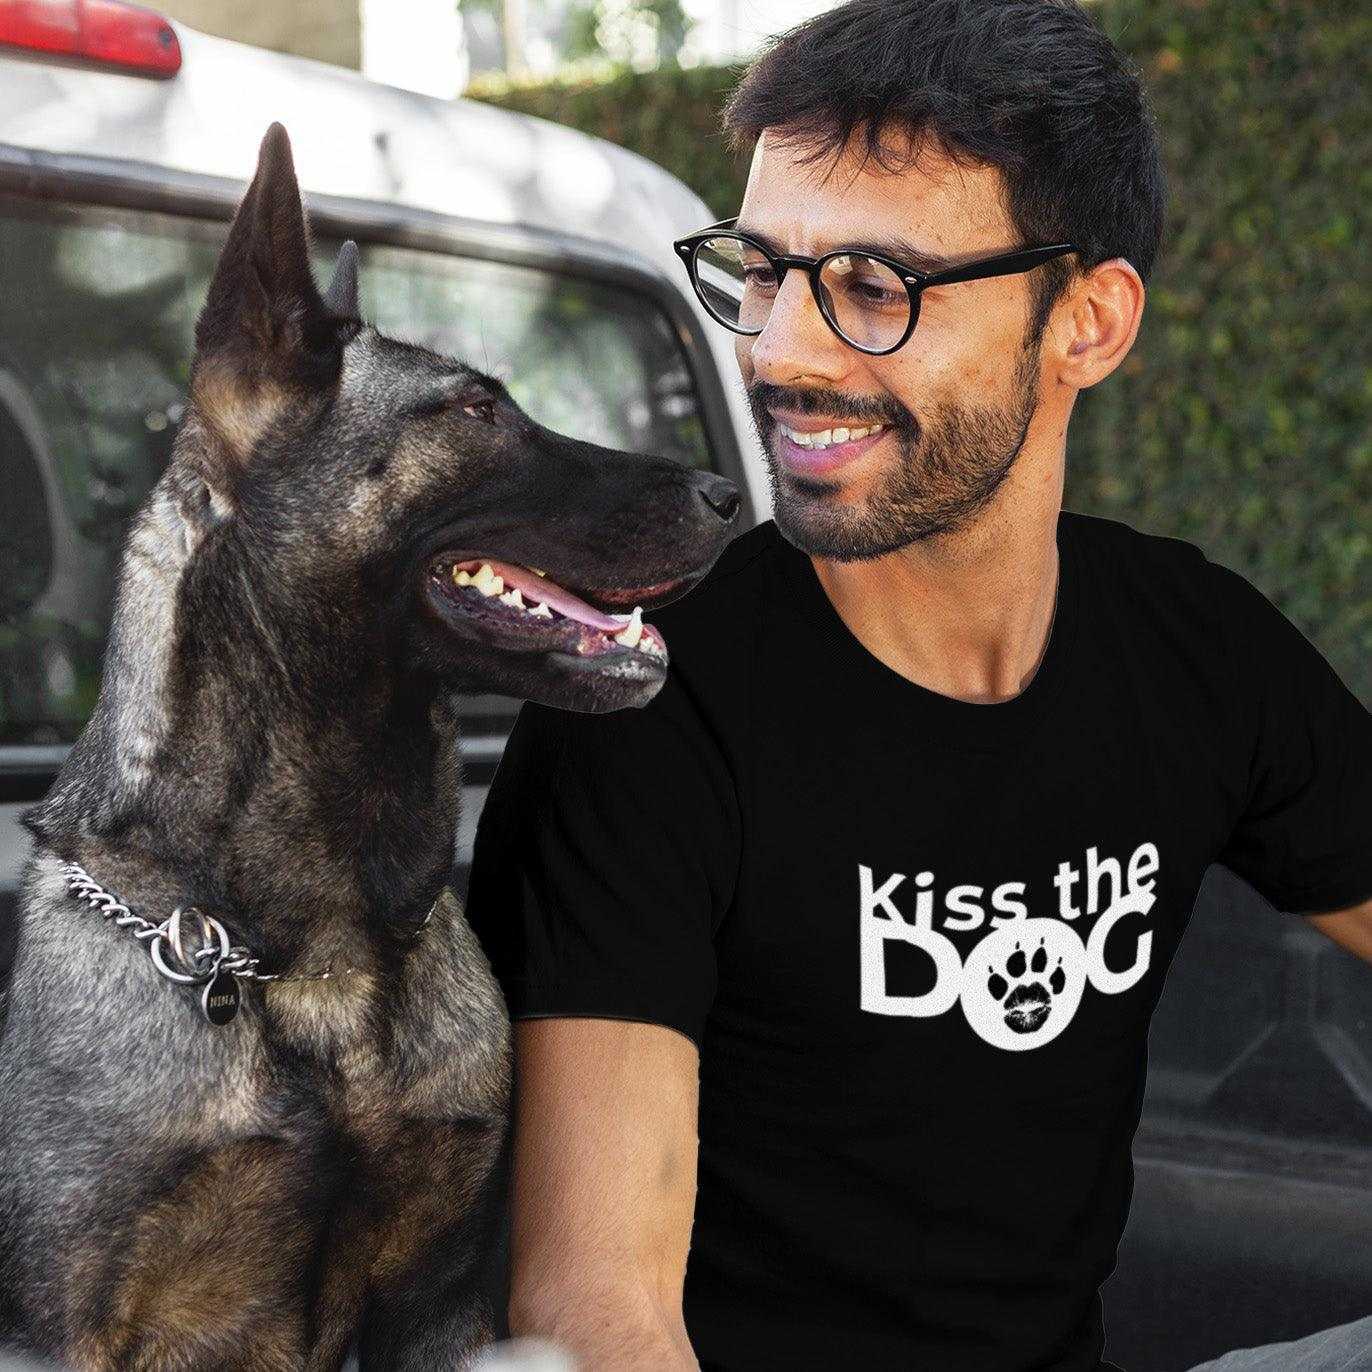 T-Shirt - "Kiss the Dog" Kussmund im "O" mit Kralle